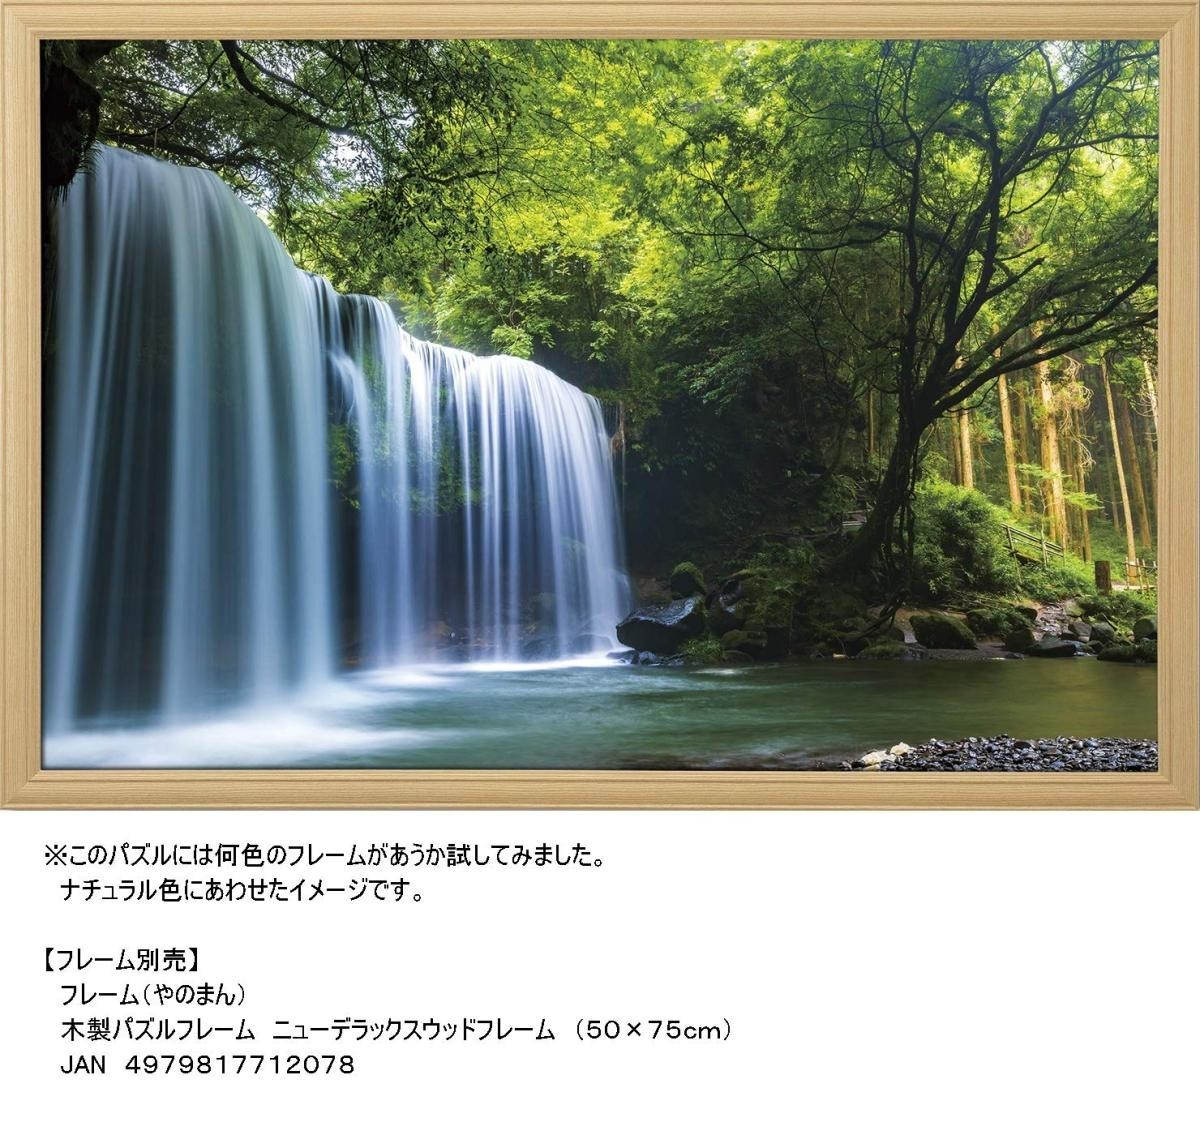 ジグソーパズル 1000ピース 癒しの水簾(熊本県鍋ヶ滝) 50x75cm 10-1349　送料無料 新品